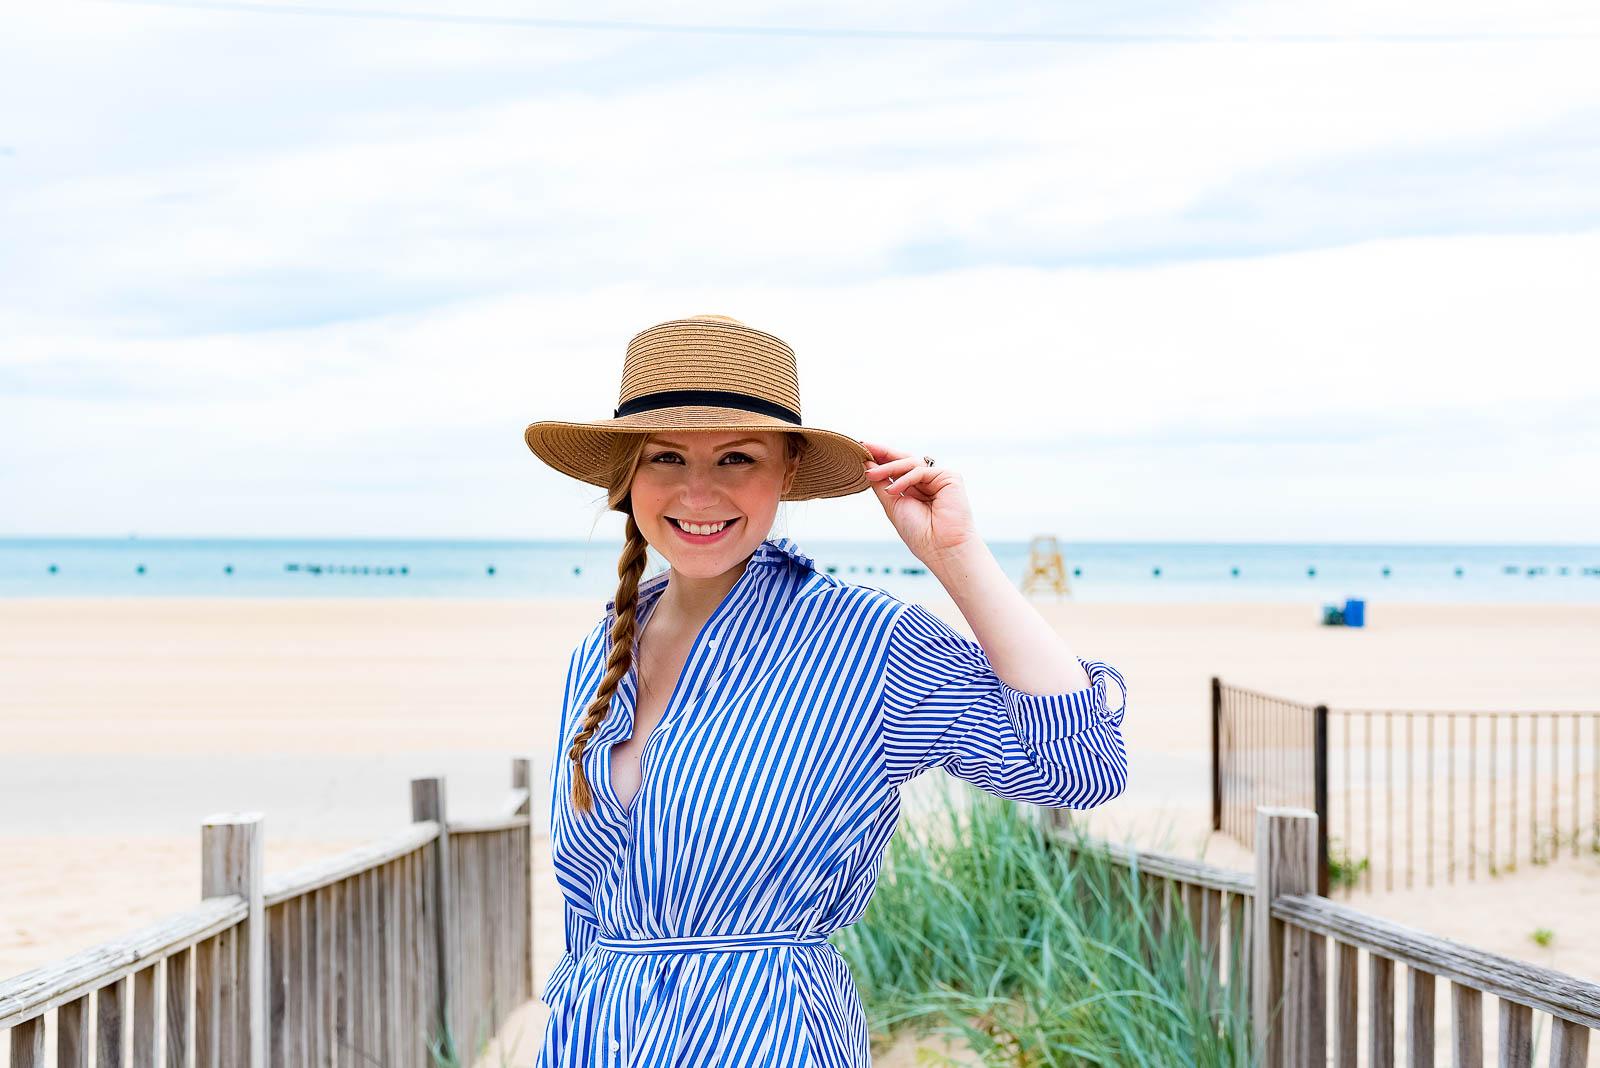 Summer Striped Shirtdress Beach Outfit